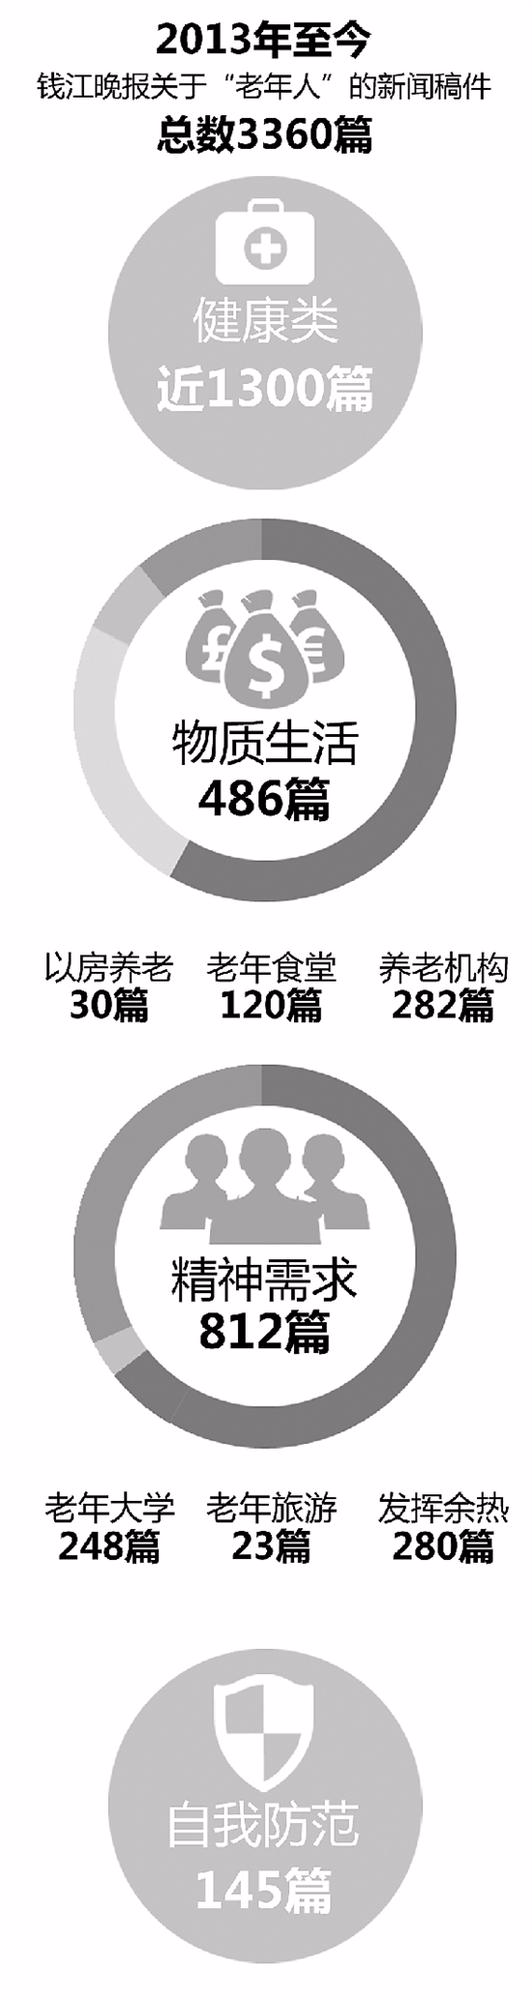 钱报记者统计的长寿秘诀 温州成为“长寿之乡”